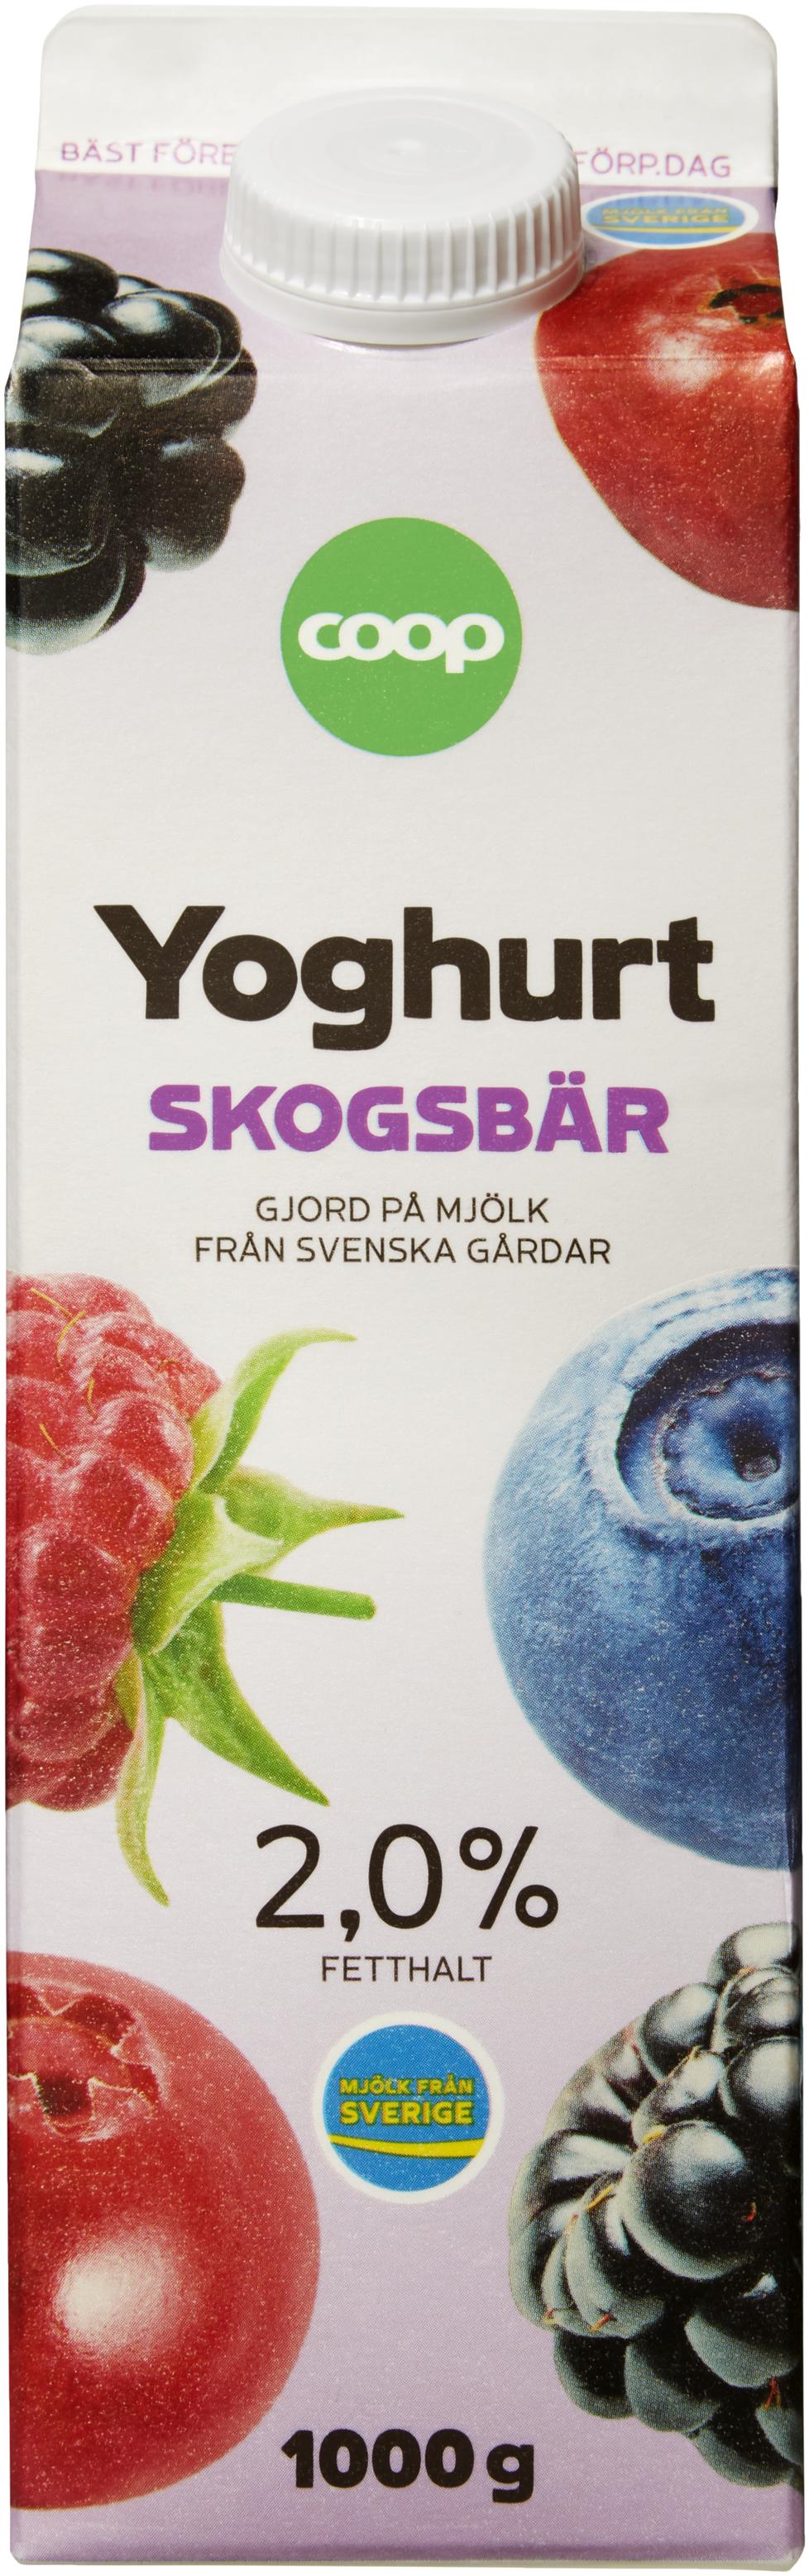 Yoghurt Skogsbär för 23,5 kr på Coop